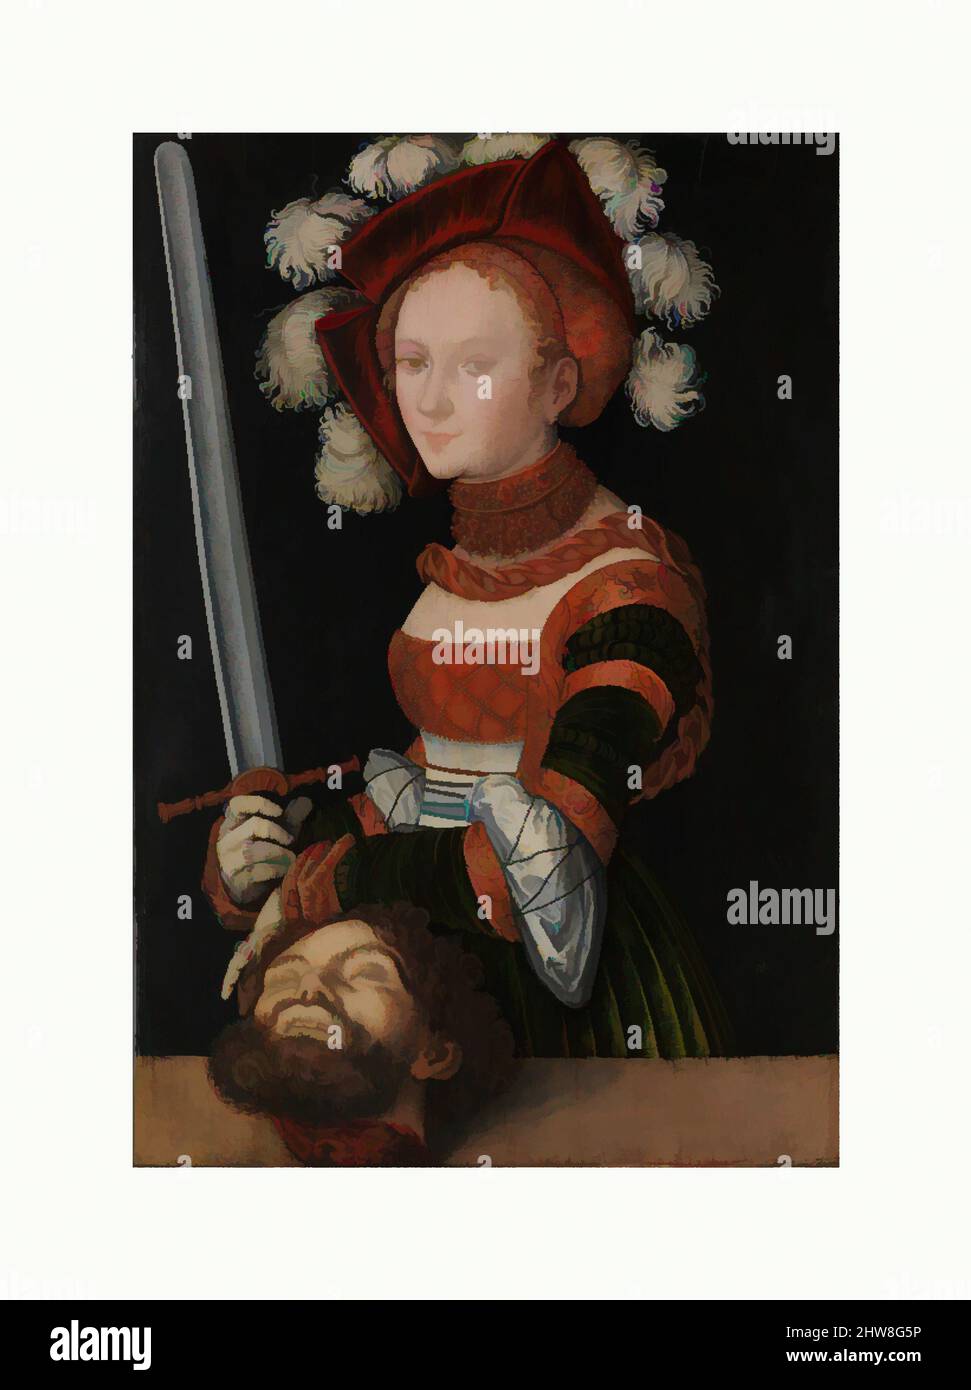 Arte ispirata da Judith con la testa di Holofernes, ca. 1530, olio su tiglio, 35 1/4 x 24 3/8 poll. (89,5 x 61,9 cm), dipinti, Lucas Cranach il Vecchio (tedesco, Kronach 1472–1553 Weimar), in questo pannello Judith presenta la testa tagliata di Holofernes, il generale assiro che dirige le opere classiche modernizzate da Artotop con un tuffo di modernità. Forme, colore e valore, impatto visivo accattivante sulle emozioni artistiche attraverso la libertà delle opere d'arte in modo contemporaneo. Un messaggio senza tempo che persegue una nuova direzione selvaggiamente creativa. Artisti che si rivolgono al supporto digitale e creano l'NFT Artotop Foto Stock